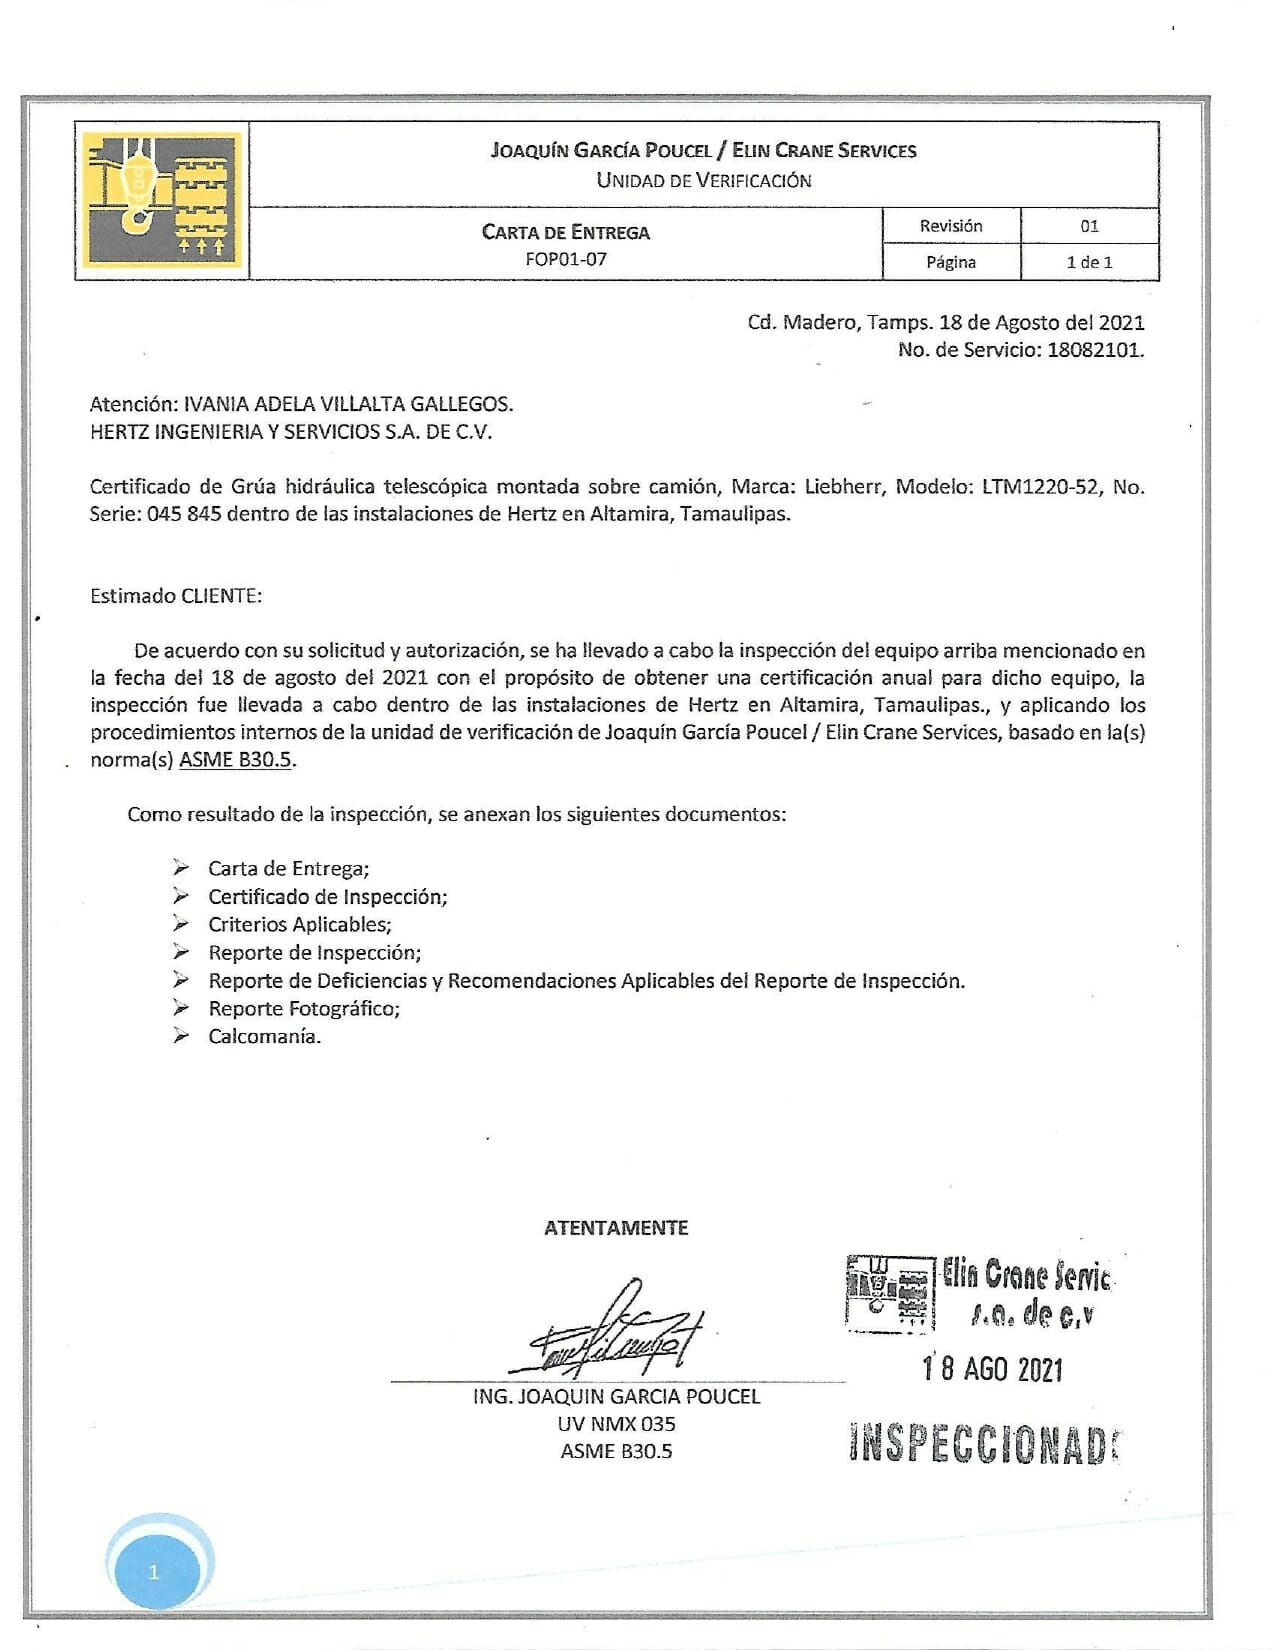 047-HTZ-018-150 CERTIFICADO DE GRÚA HIDRÁULICA MONTADA SOBRE CAMIÓN LIEBHERR LTM1220-52 (1)_page-0001